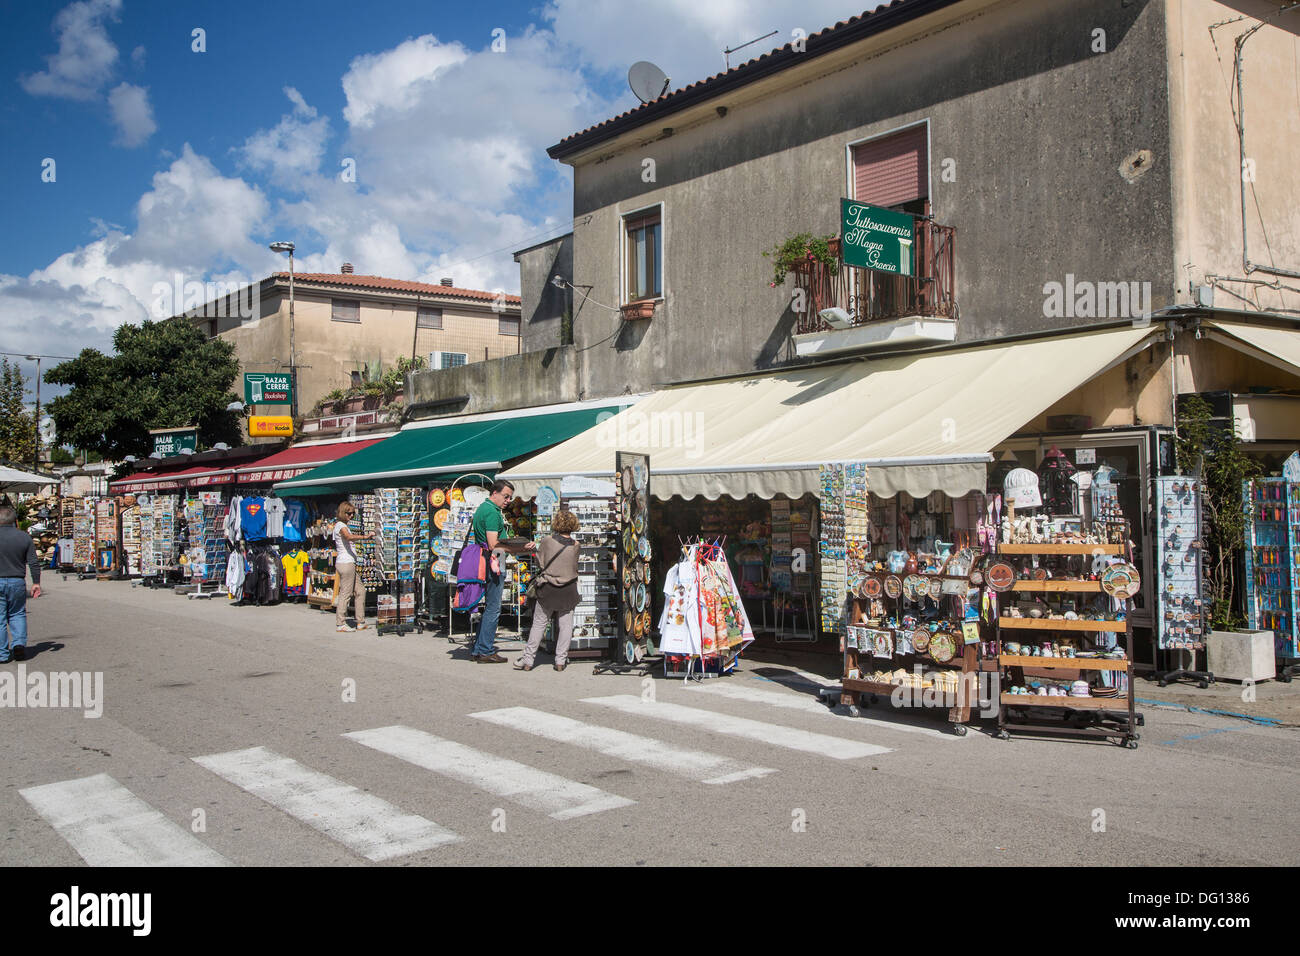 Touristischen Geschäfte verkaufen Souvenirs in der antiken Stadt Paestum, Kampanien, Italien Stockfoto